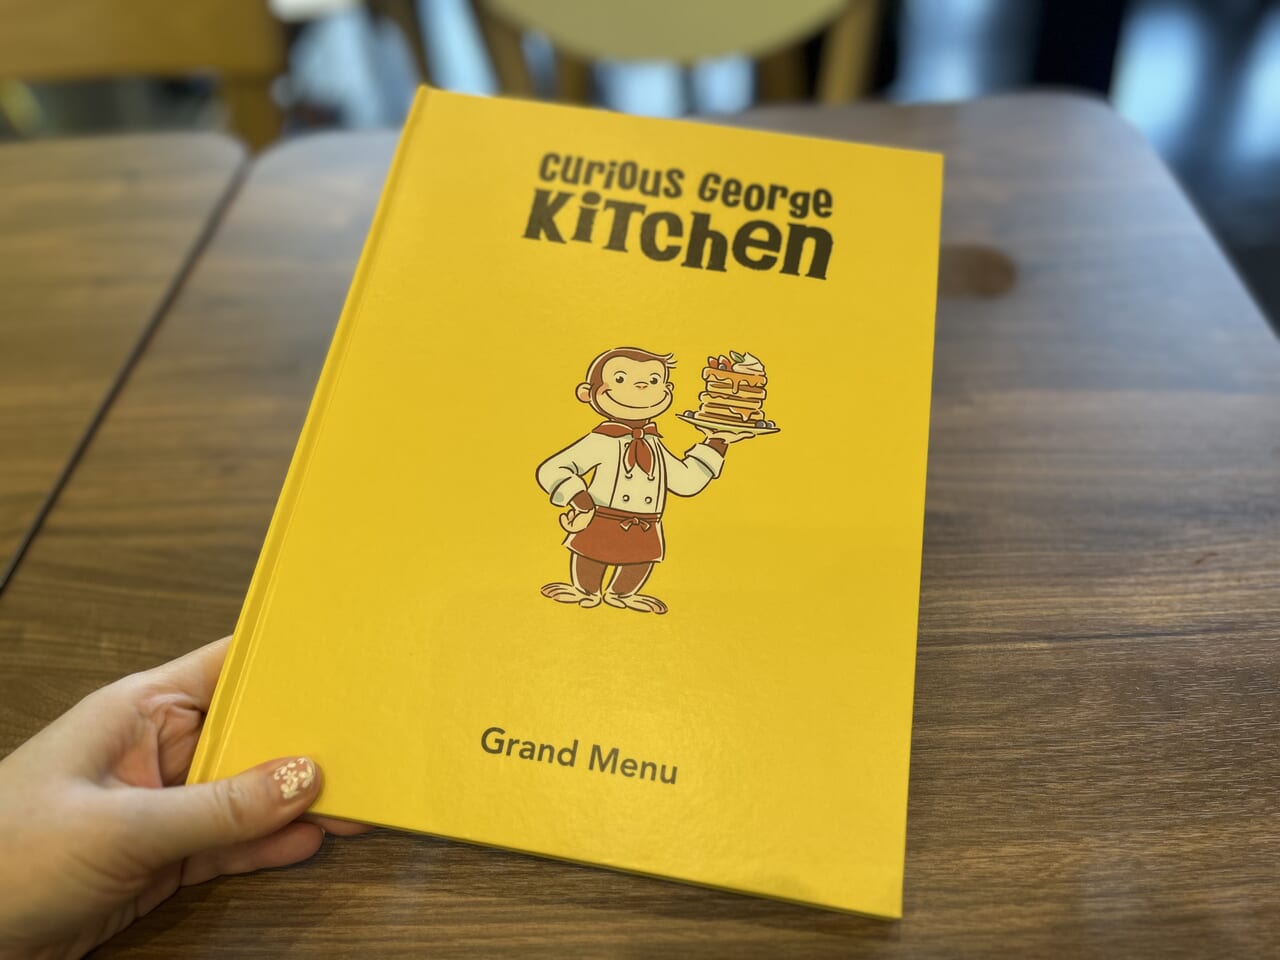 Curious George Kitchen-menu